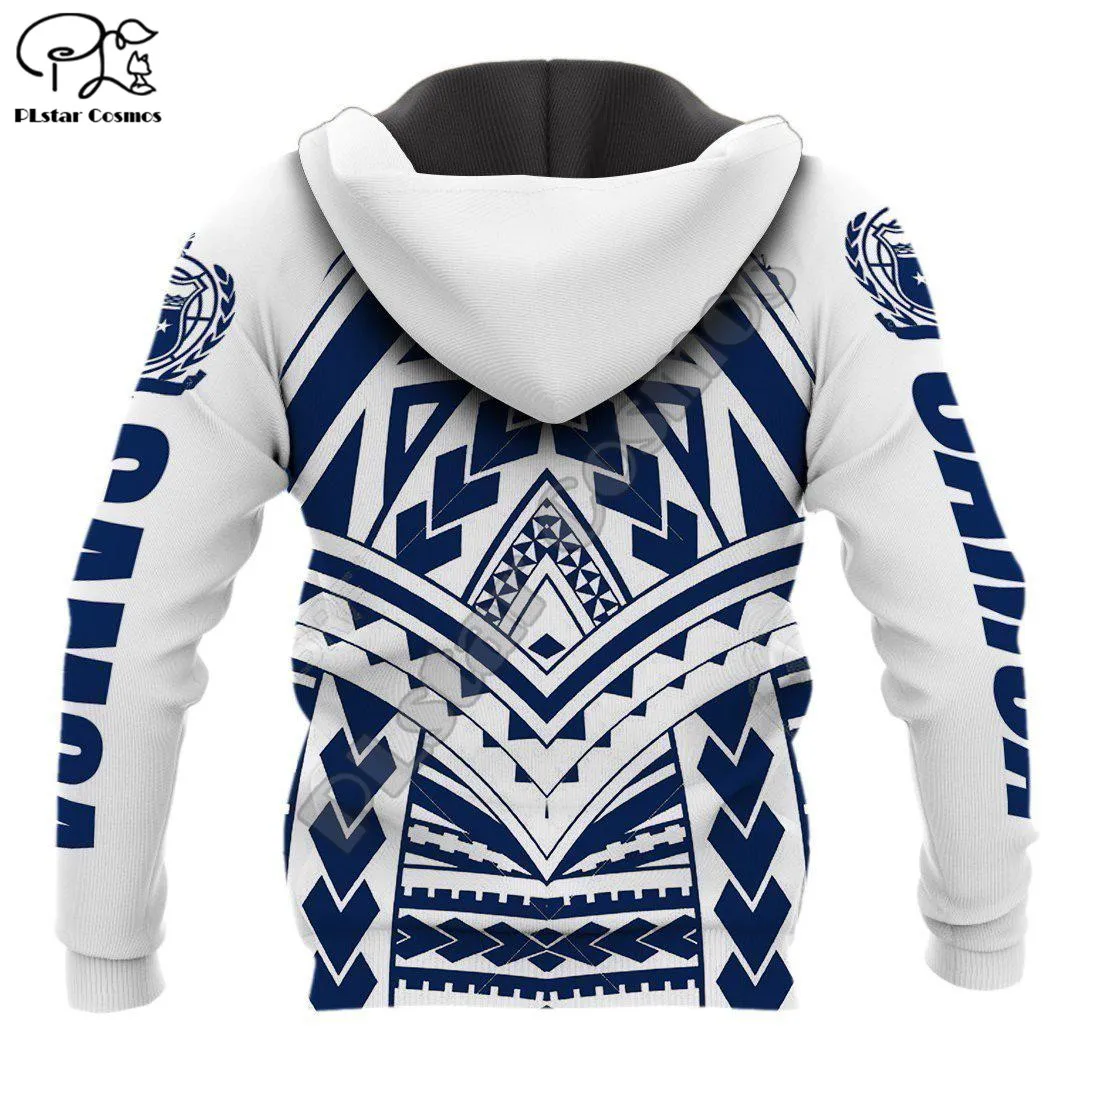 PLstar Cosmos Samoa Americană de Cultură 3D Imprimate Noua Moda Hanorace Jachete cu Glugă Zip Pentru Barbati/Femei Casual Streetwear S09 3